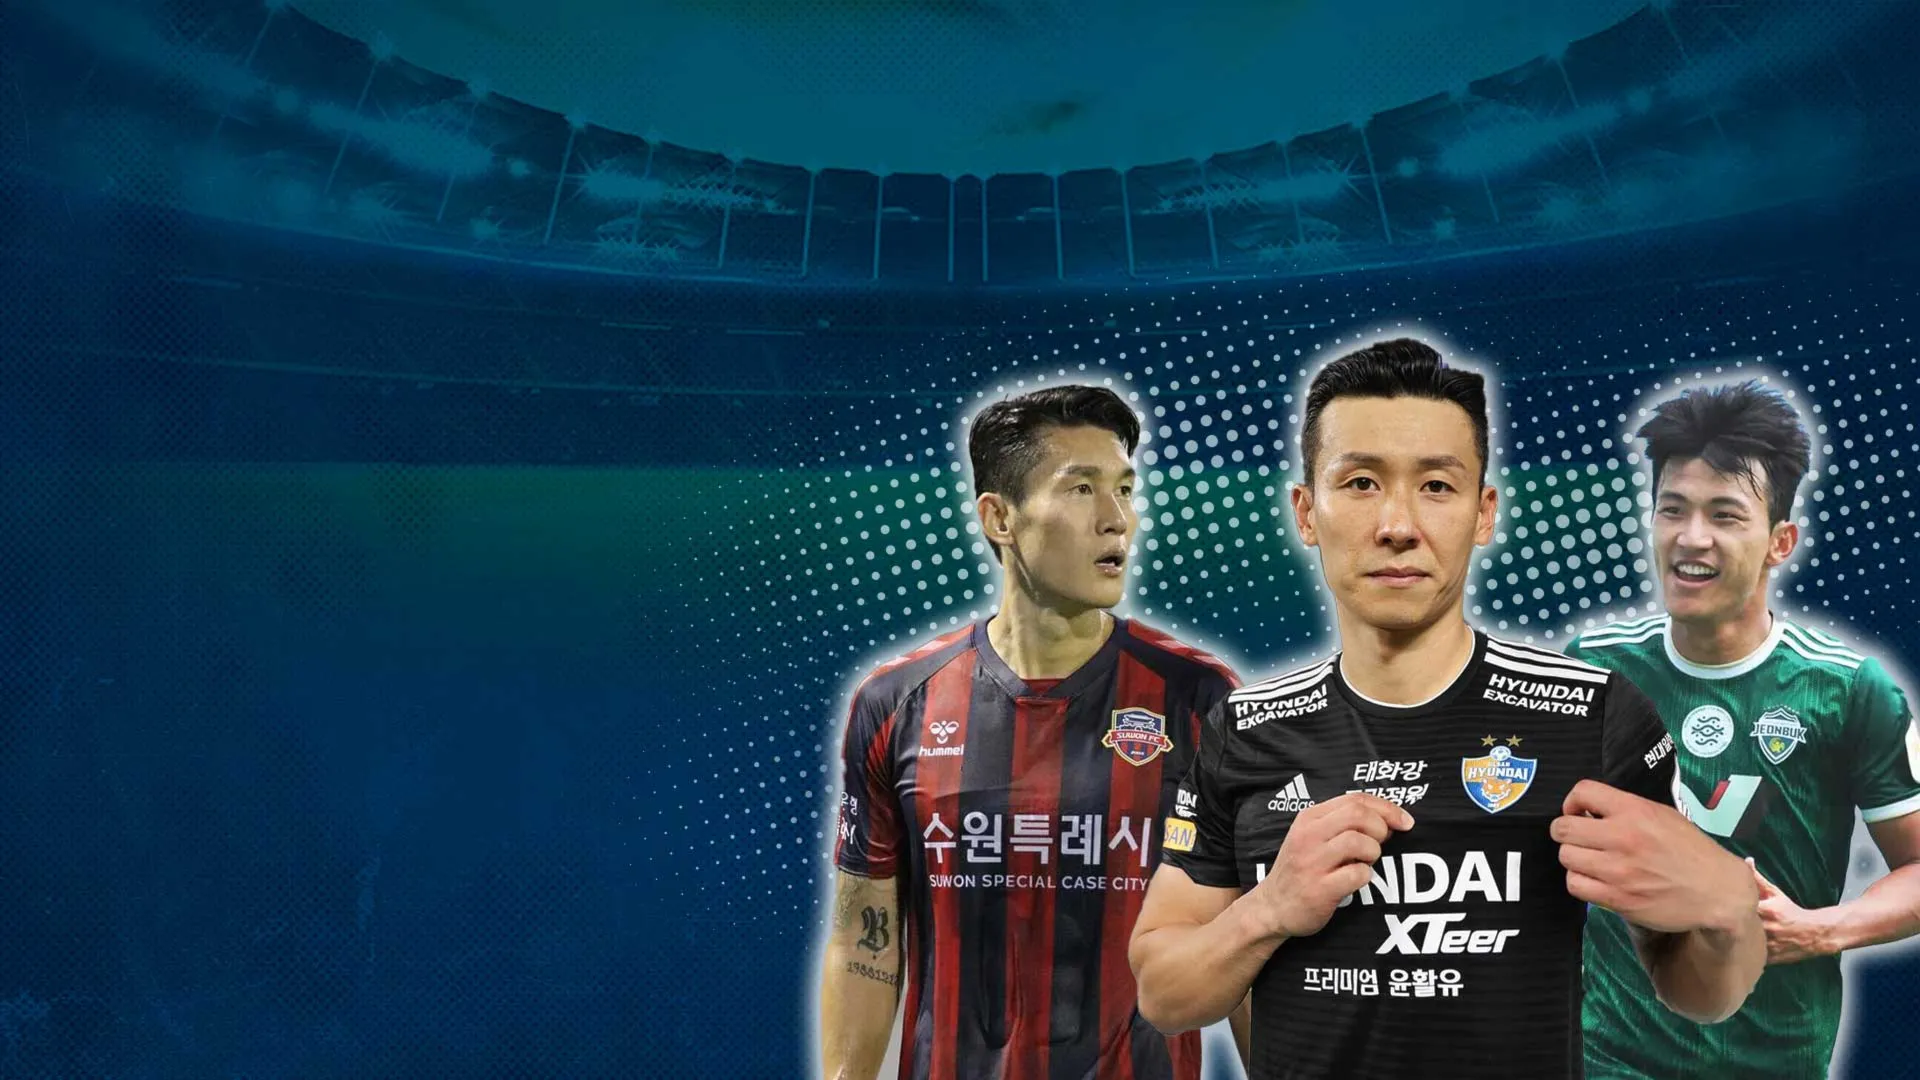 Nhận Định Trước Vòng 33 K-League 1 2022: Kịch Tính Ngày Hạ Màn Giai Đoạn 1